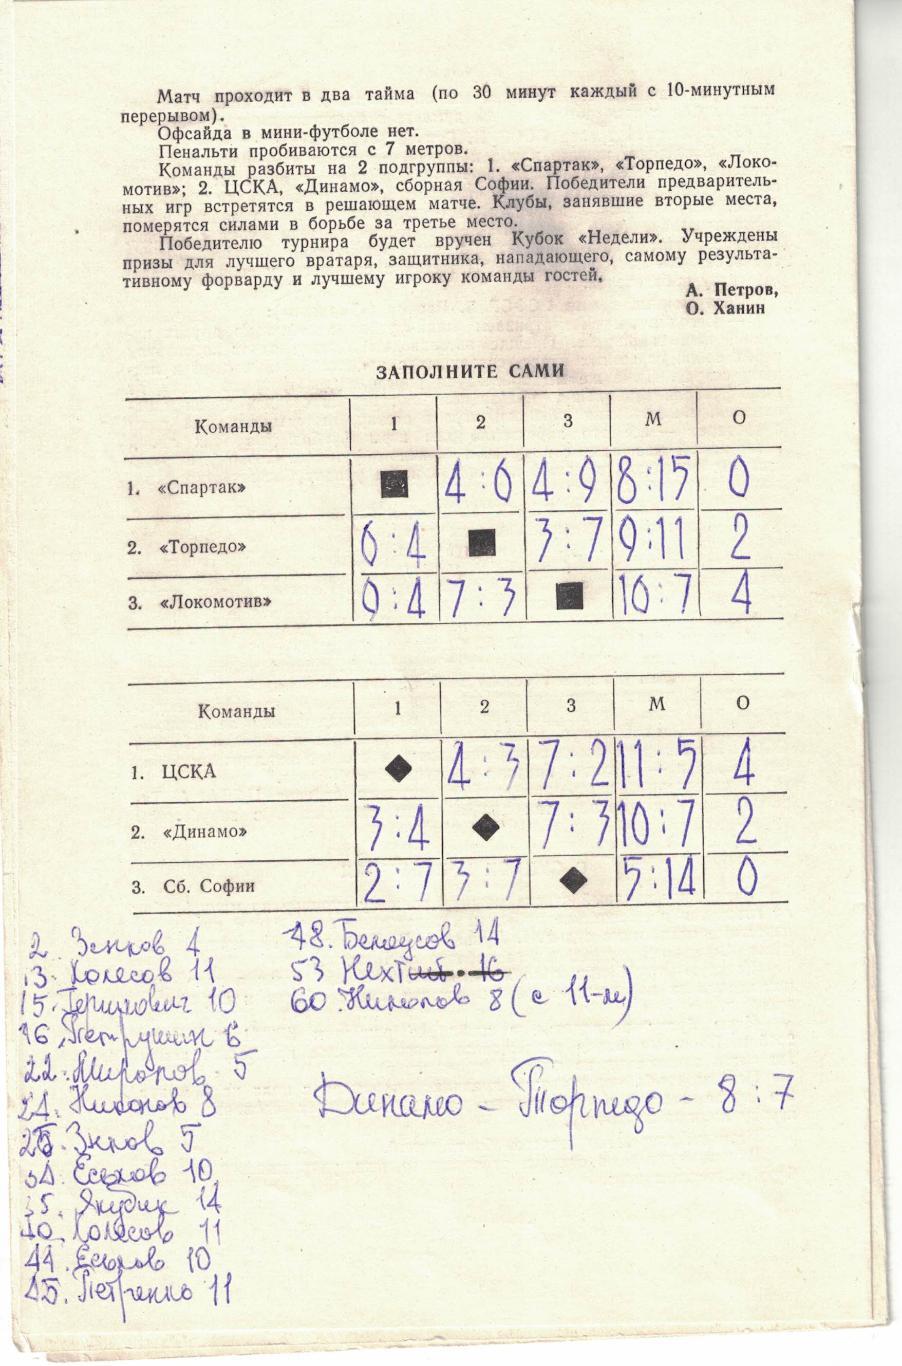 Мини-футбол. Турнир Кубок Недели 1975 2